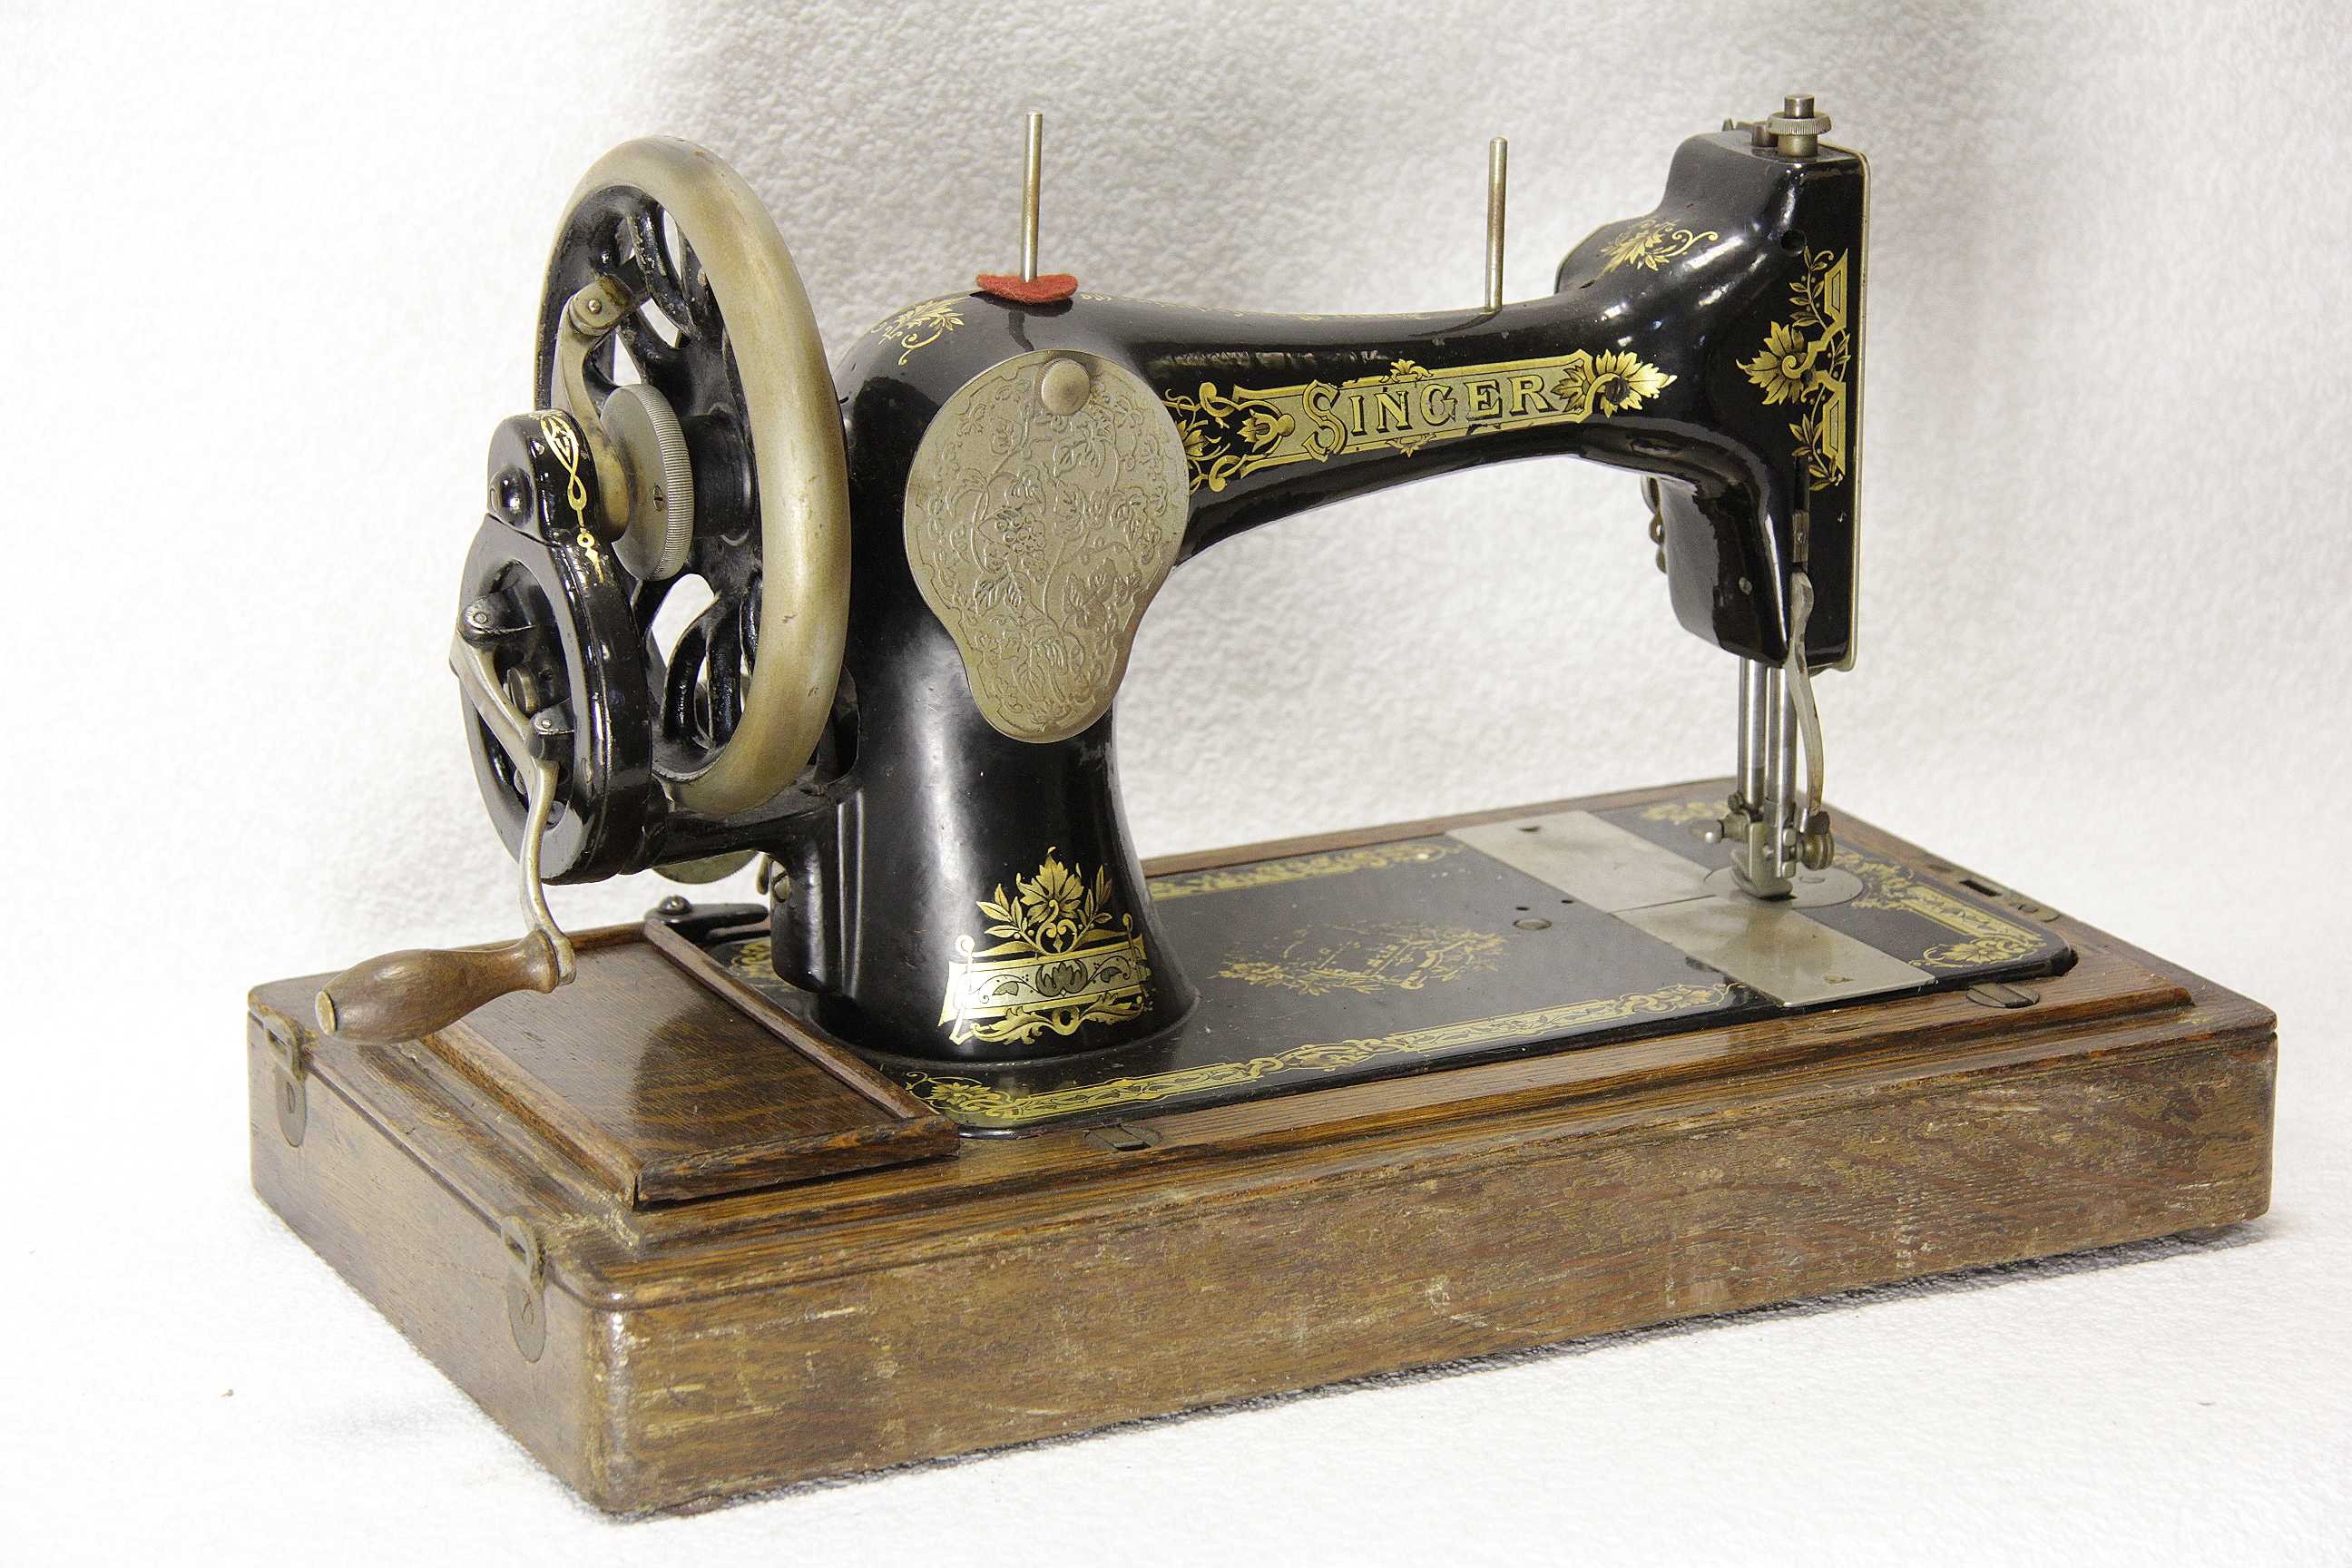 Купить старинную машинку. Швейная машинка (Zinger super 2001). Швейная машинка Зингер 1851. Швейная машинка Зингер 1906. Швейная машинка Зингера 1841.